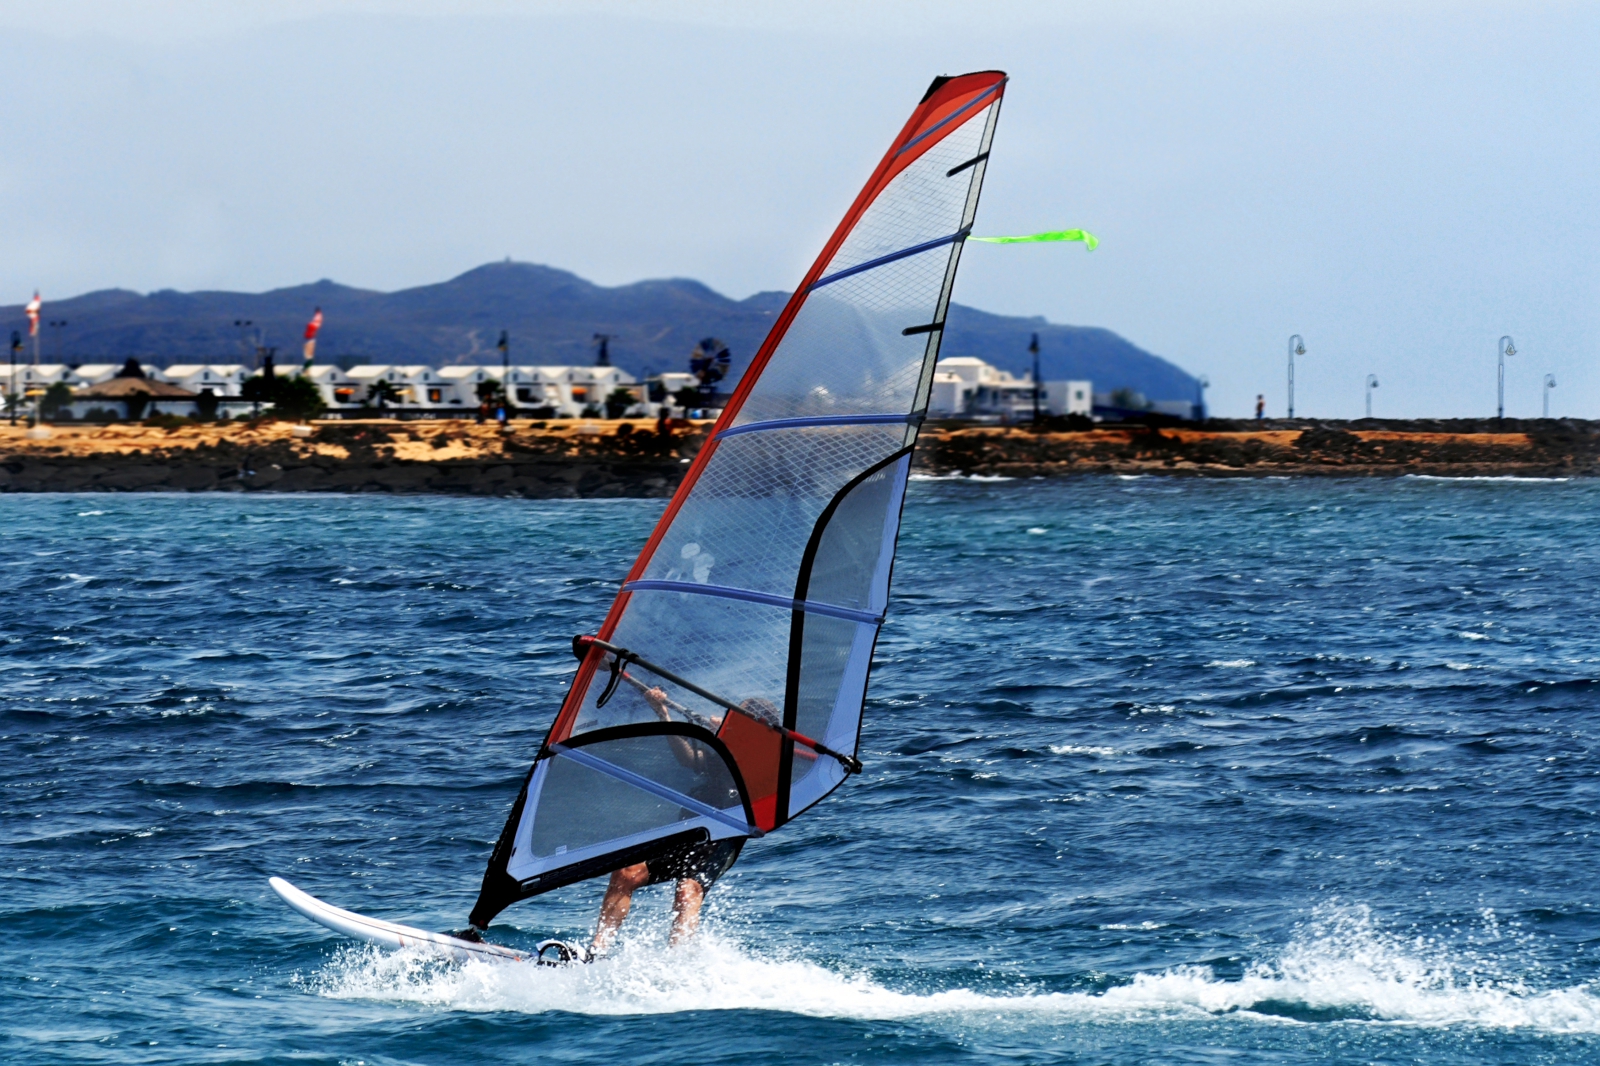 'A windsurfer sailing off the coast of Lanzarote' - Lanzarote